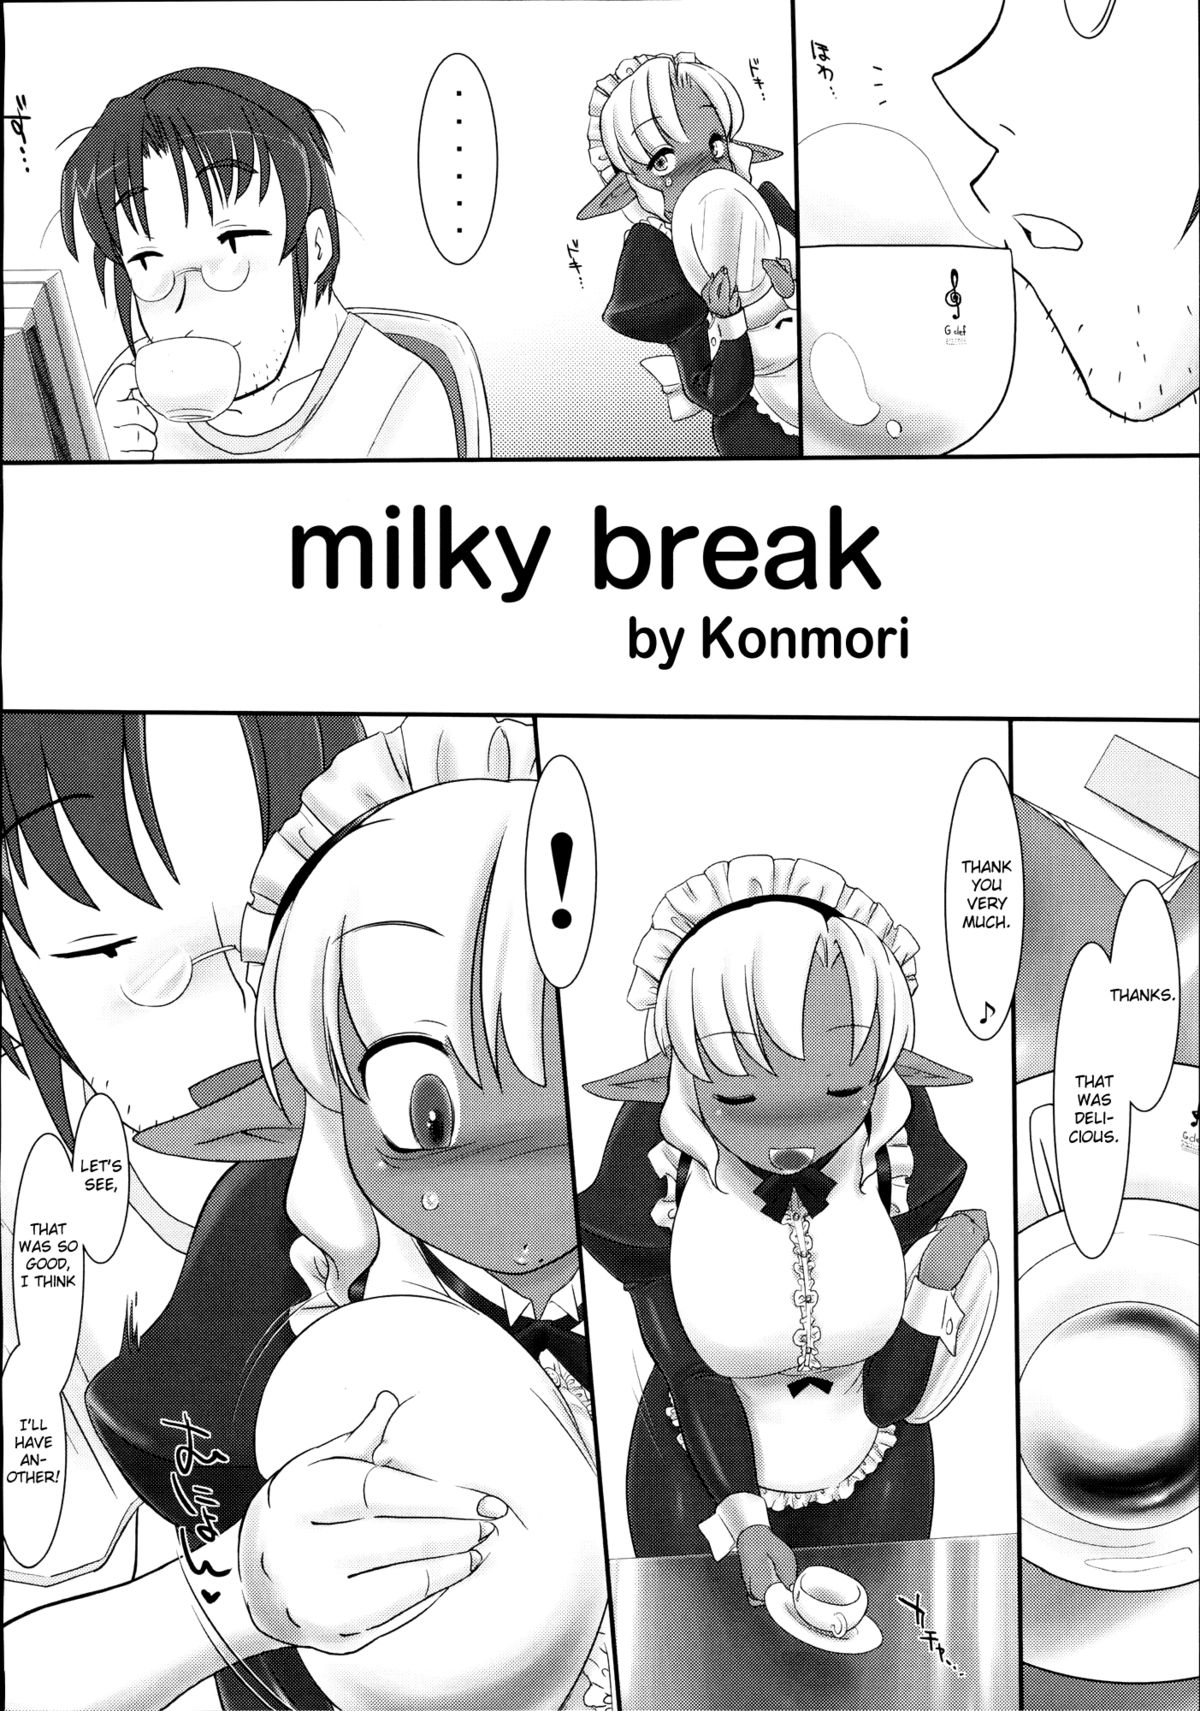 [近傍租界 (こんもり)] milky break (とらのあな 真髄 Vol. 2)